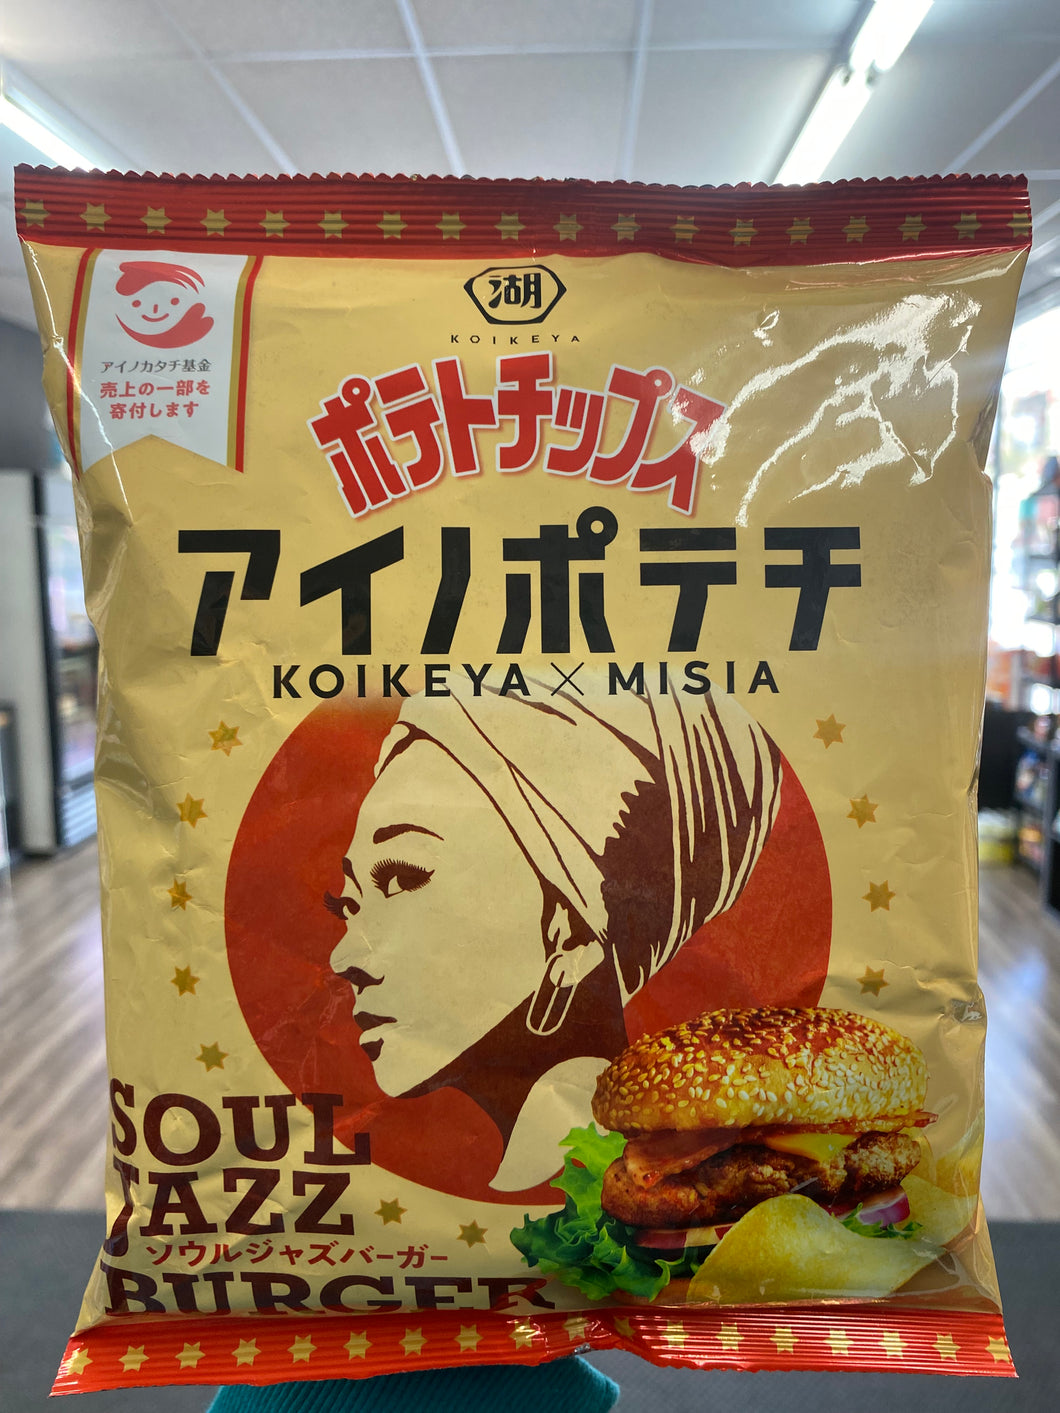 Koikeya Soulz Jazz Burger Chips (Japan)